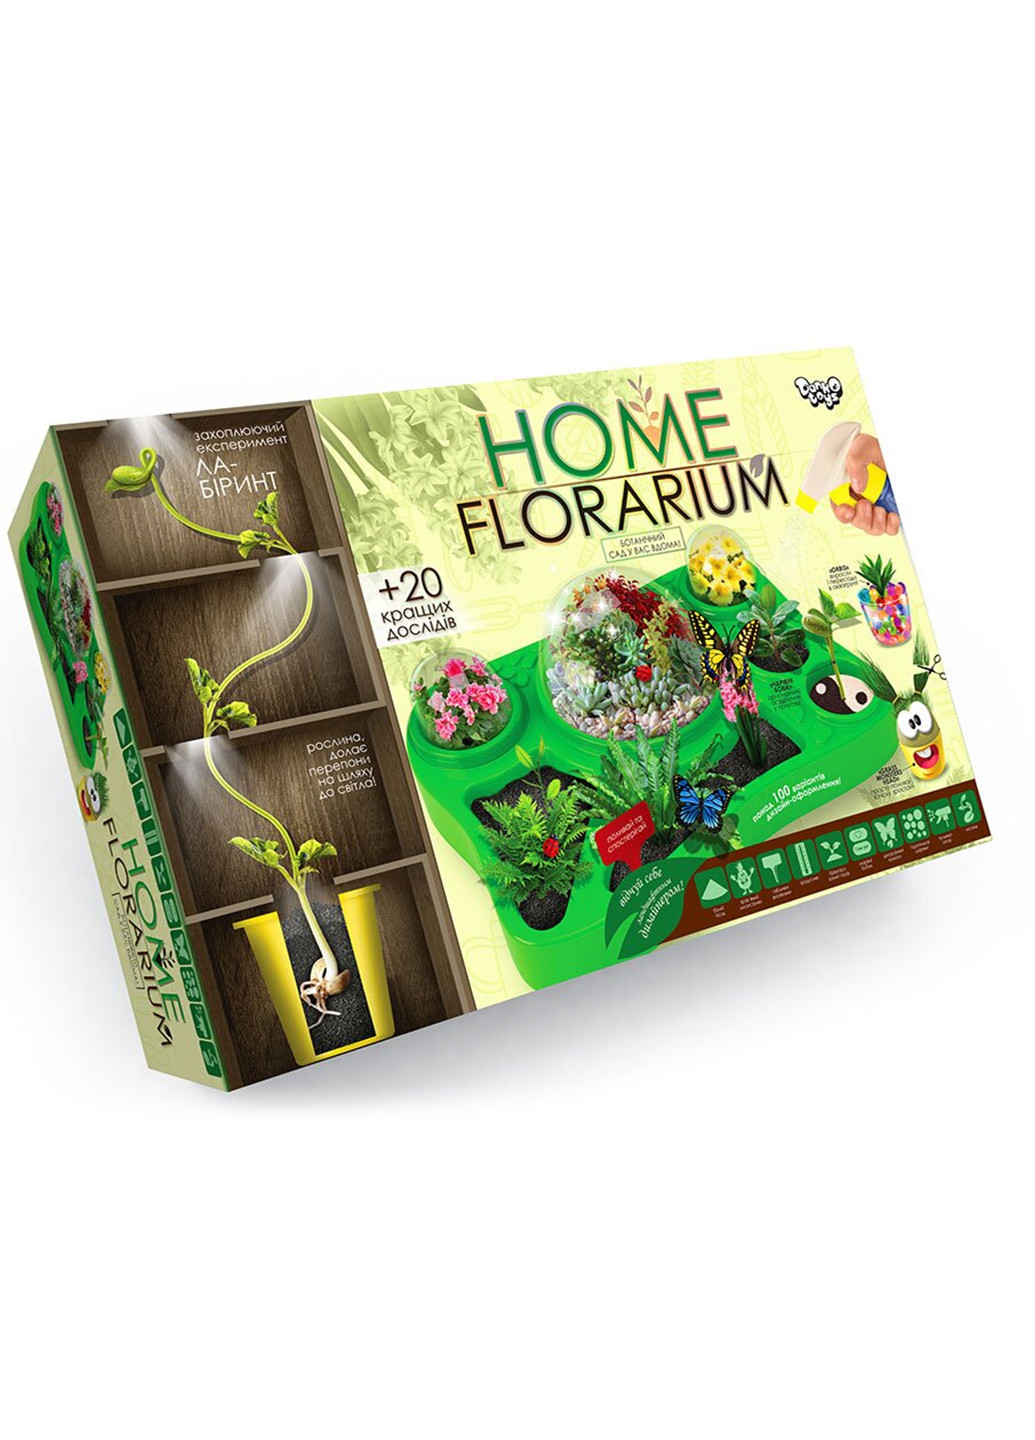 Безопасный образовательный набор для выращивания растений "HOME FLORARIUM" Danko Toys hfl-01-01u (255259784)